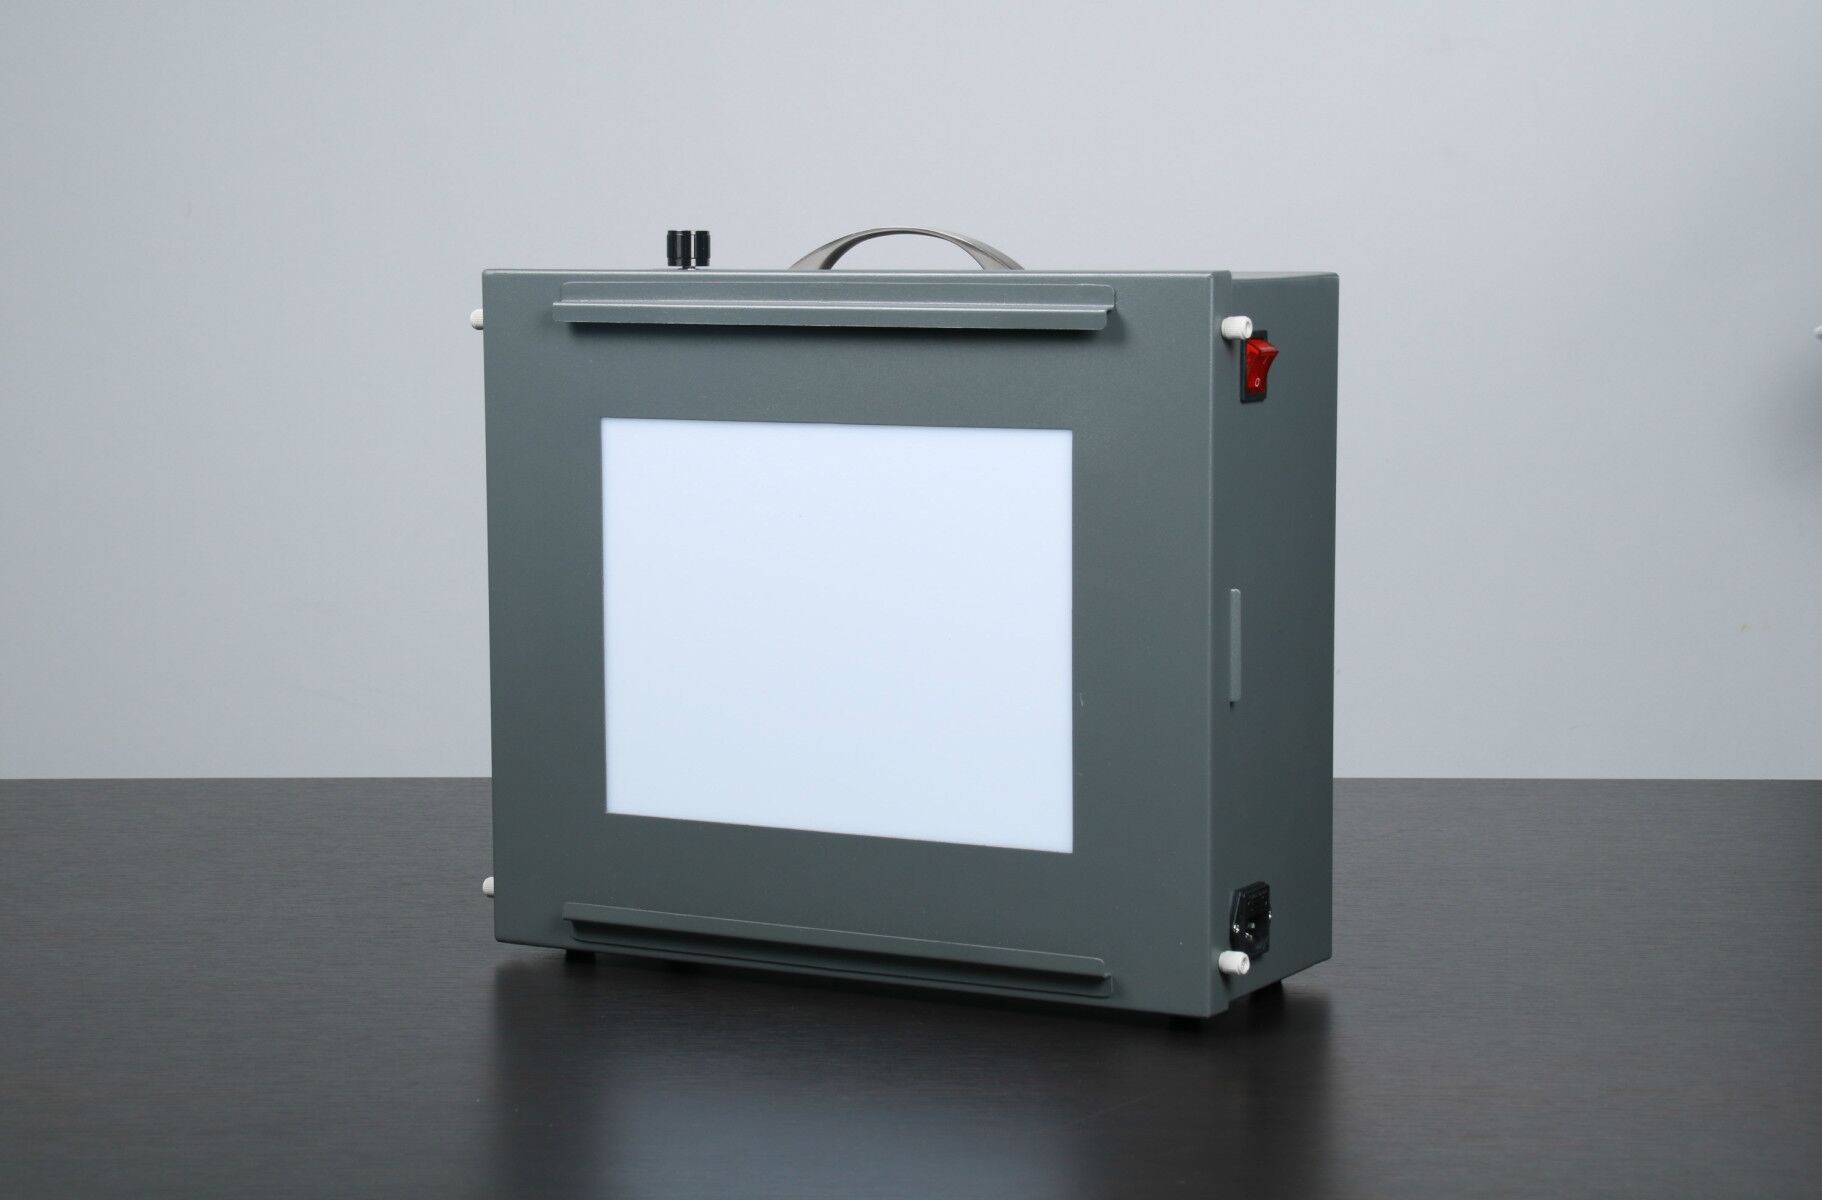  3nh HC5100 5100k International Standard Color Viewer LED color rendering index CRI>90 Transmission Camer Light Box Manufactures